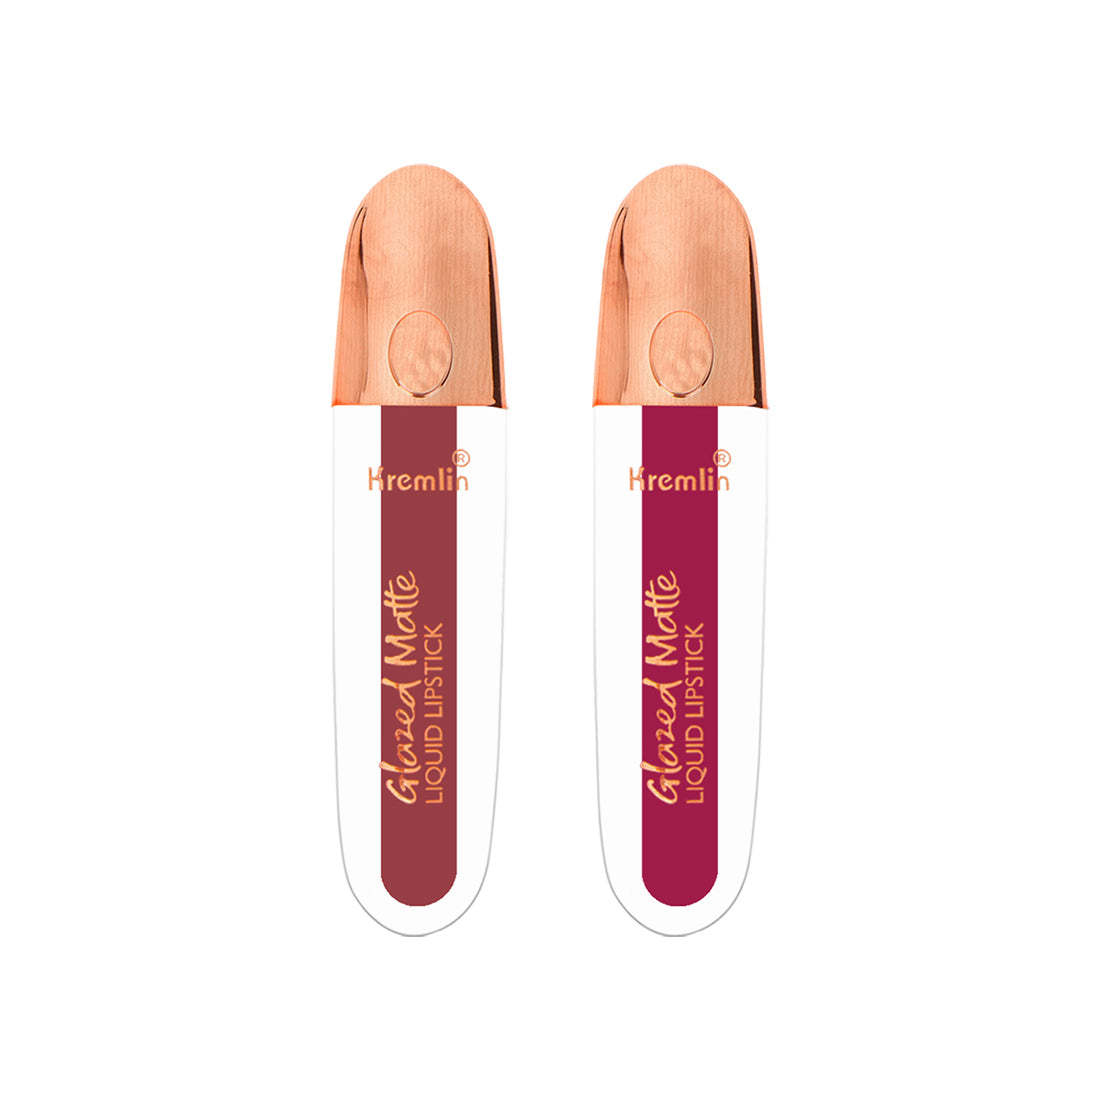 Kremlin Glazed Matte Liquid Lipstick Lips Pack of 2 (Chilling Lips, Barbie)